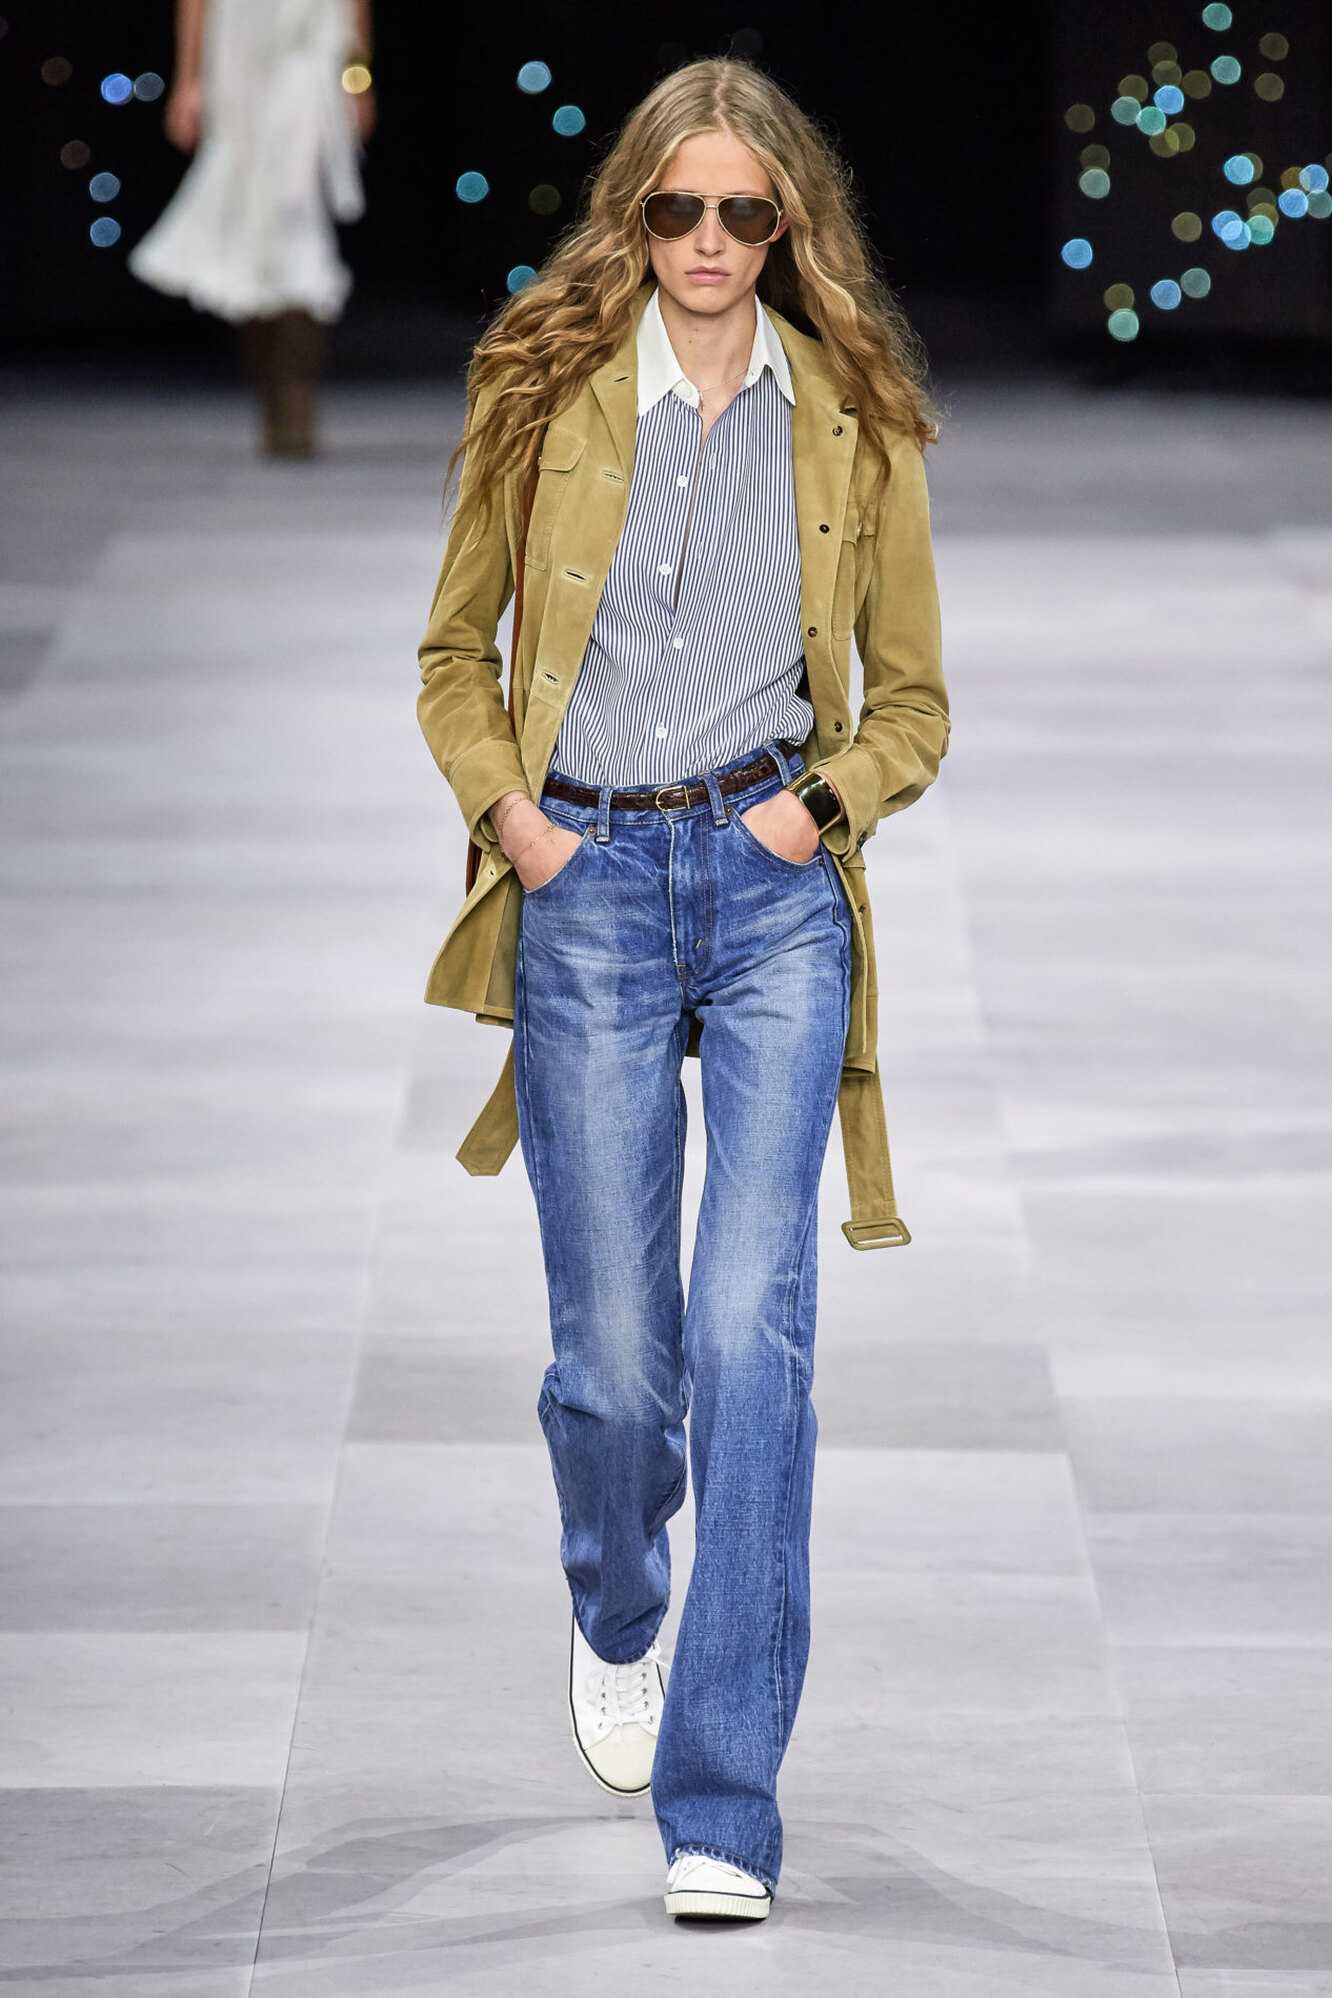 Джинсы-клёш 2020-2021: модные фасоны. с чем носить джинсы-клеш?